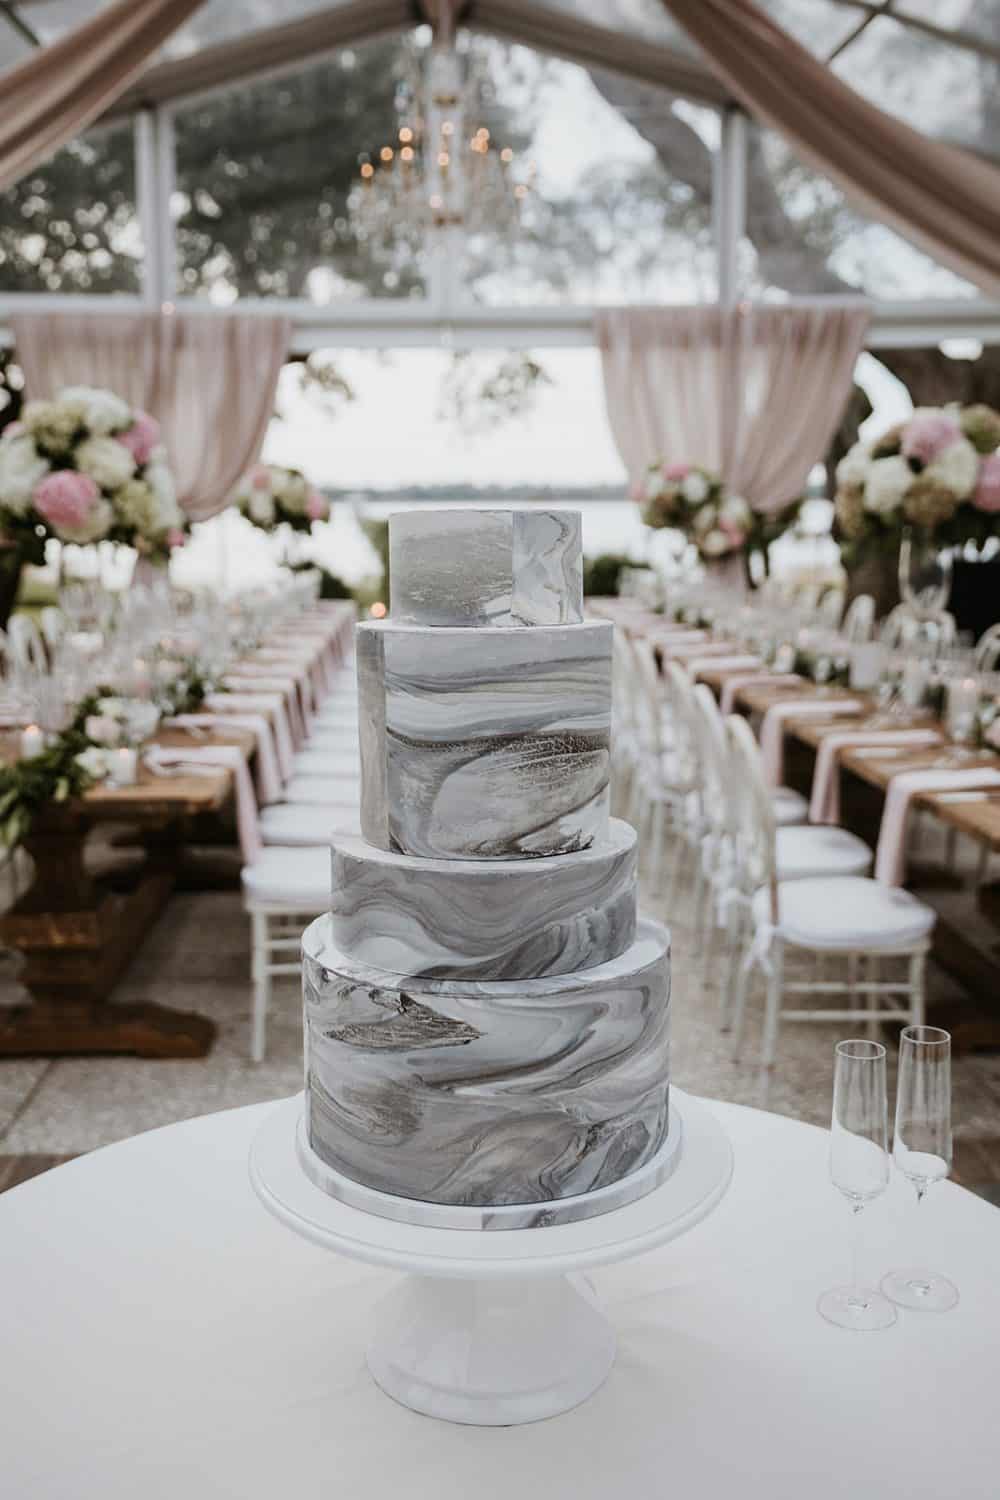 Wedding Cake Wednesday – Marbled Modeling Chocolate